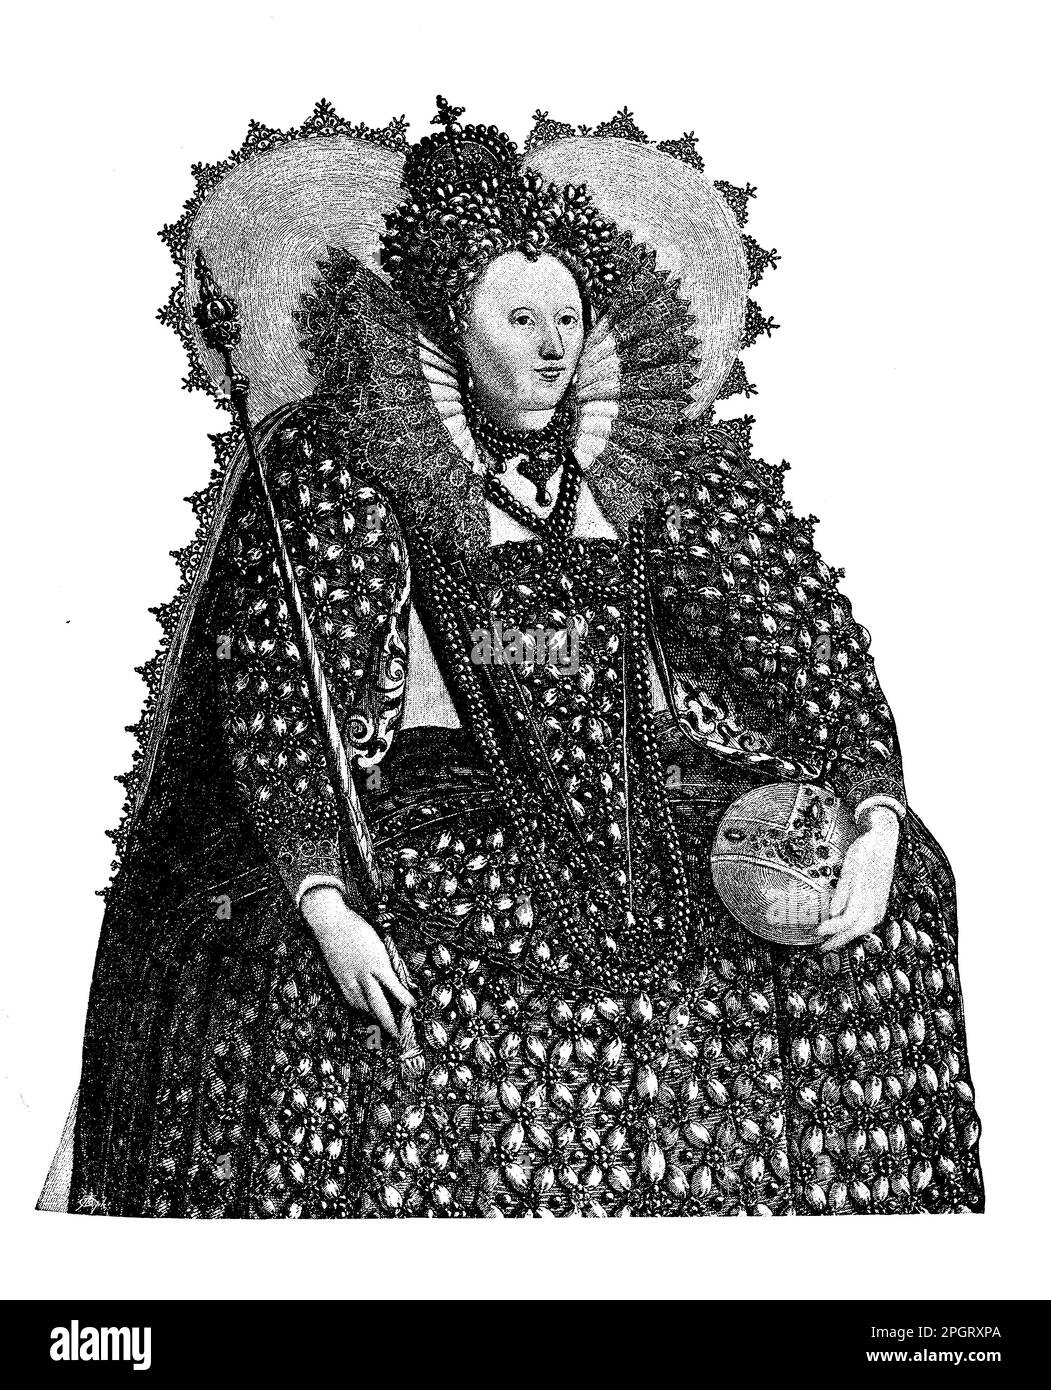 Elizabeth I. von England war eine der mächtigsten und erfolgreichsten Monarchen in der englischen Geschichte. Sie herrschte ab 1558-1603 und beaufsichtigte die Blüte der englischen Renaissance-Kultur, die Niederlage der spanischen Armada und die Errichtung der anglikanischen Kirche. Stockfoto